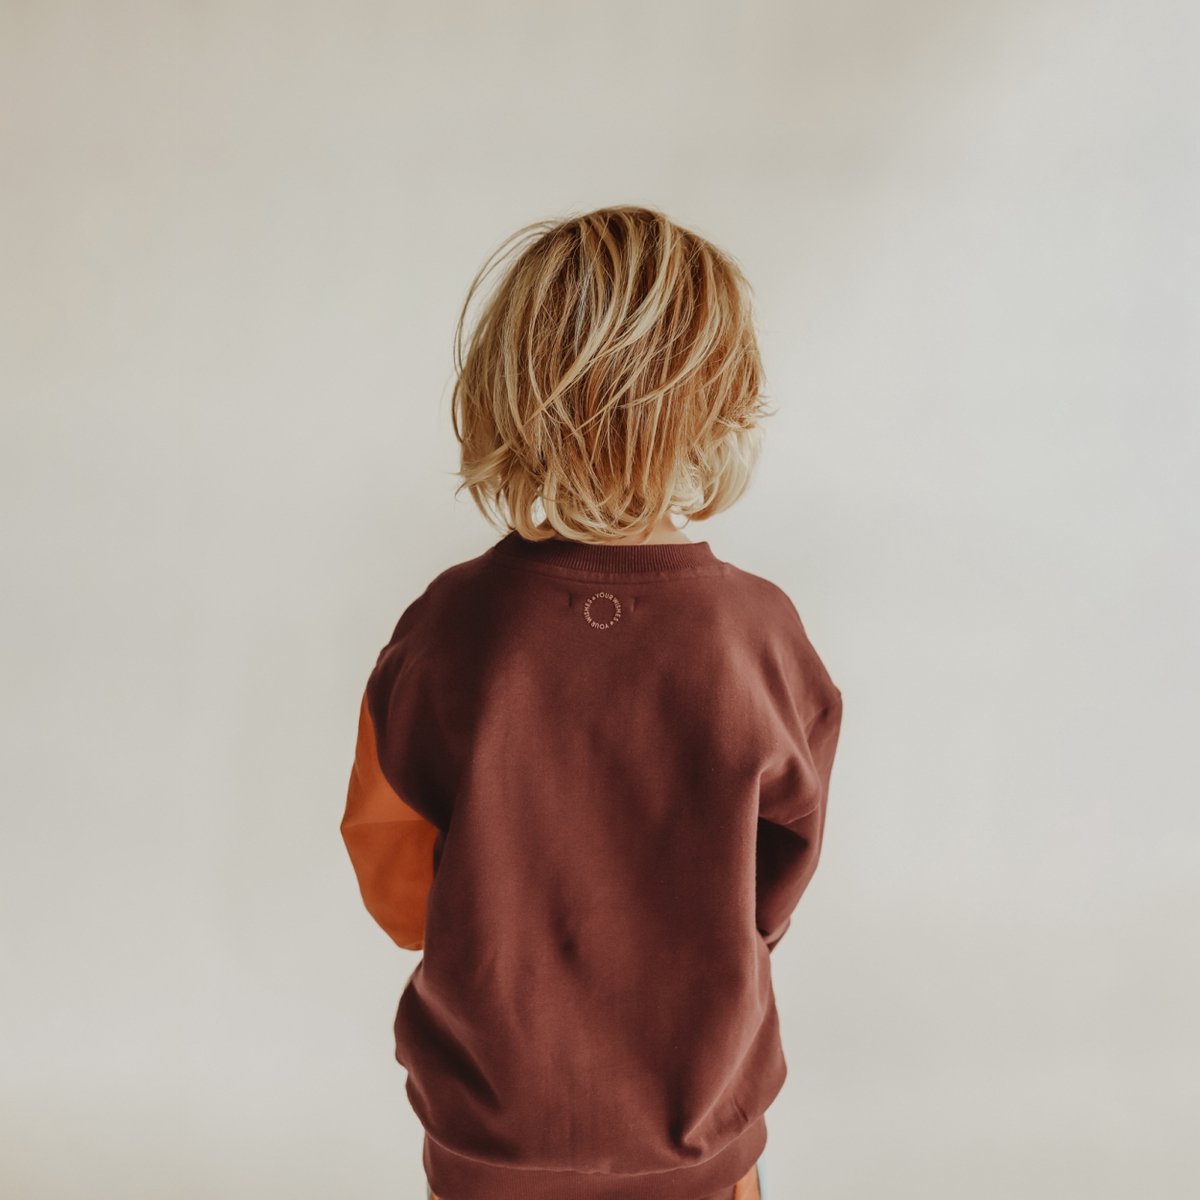 SALE Your Wishes Colorblock | Maddox - Trui jongens - Sweater jongens maat 80